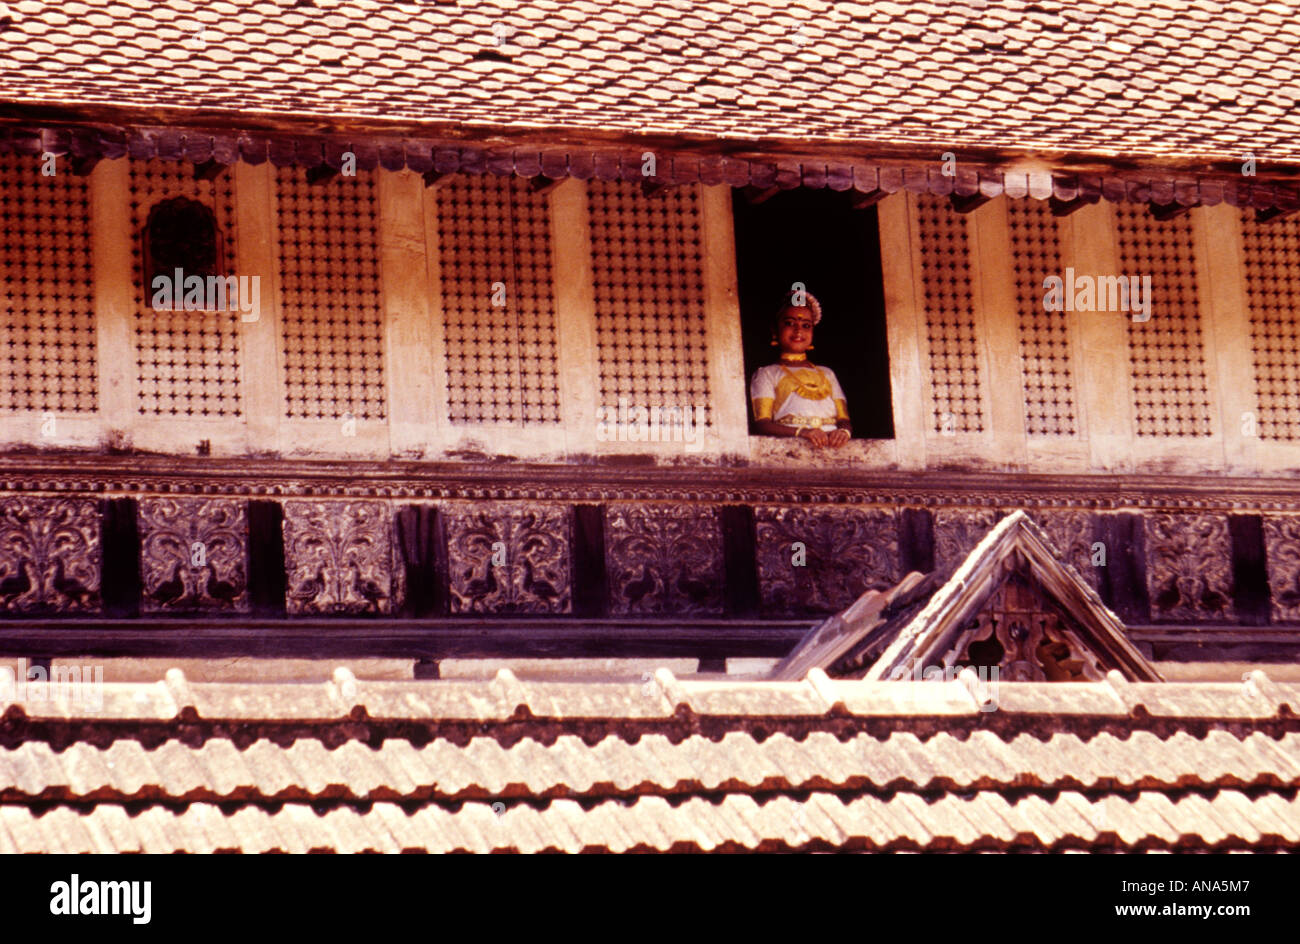 KUTHIRAMALIKA PALACE TRIVANDRUM KERALA Stock Photo